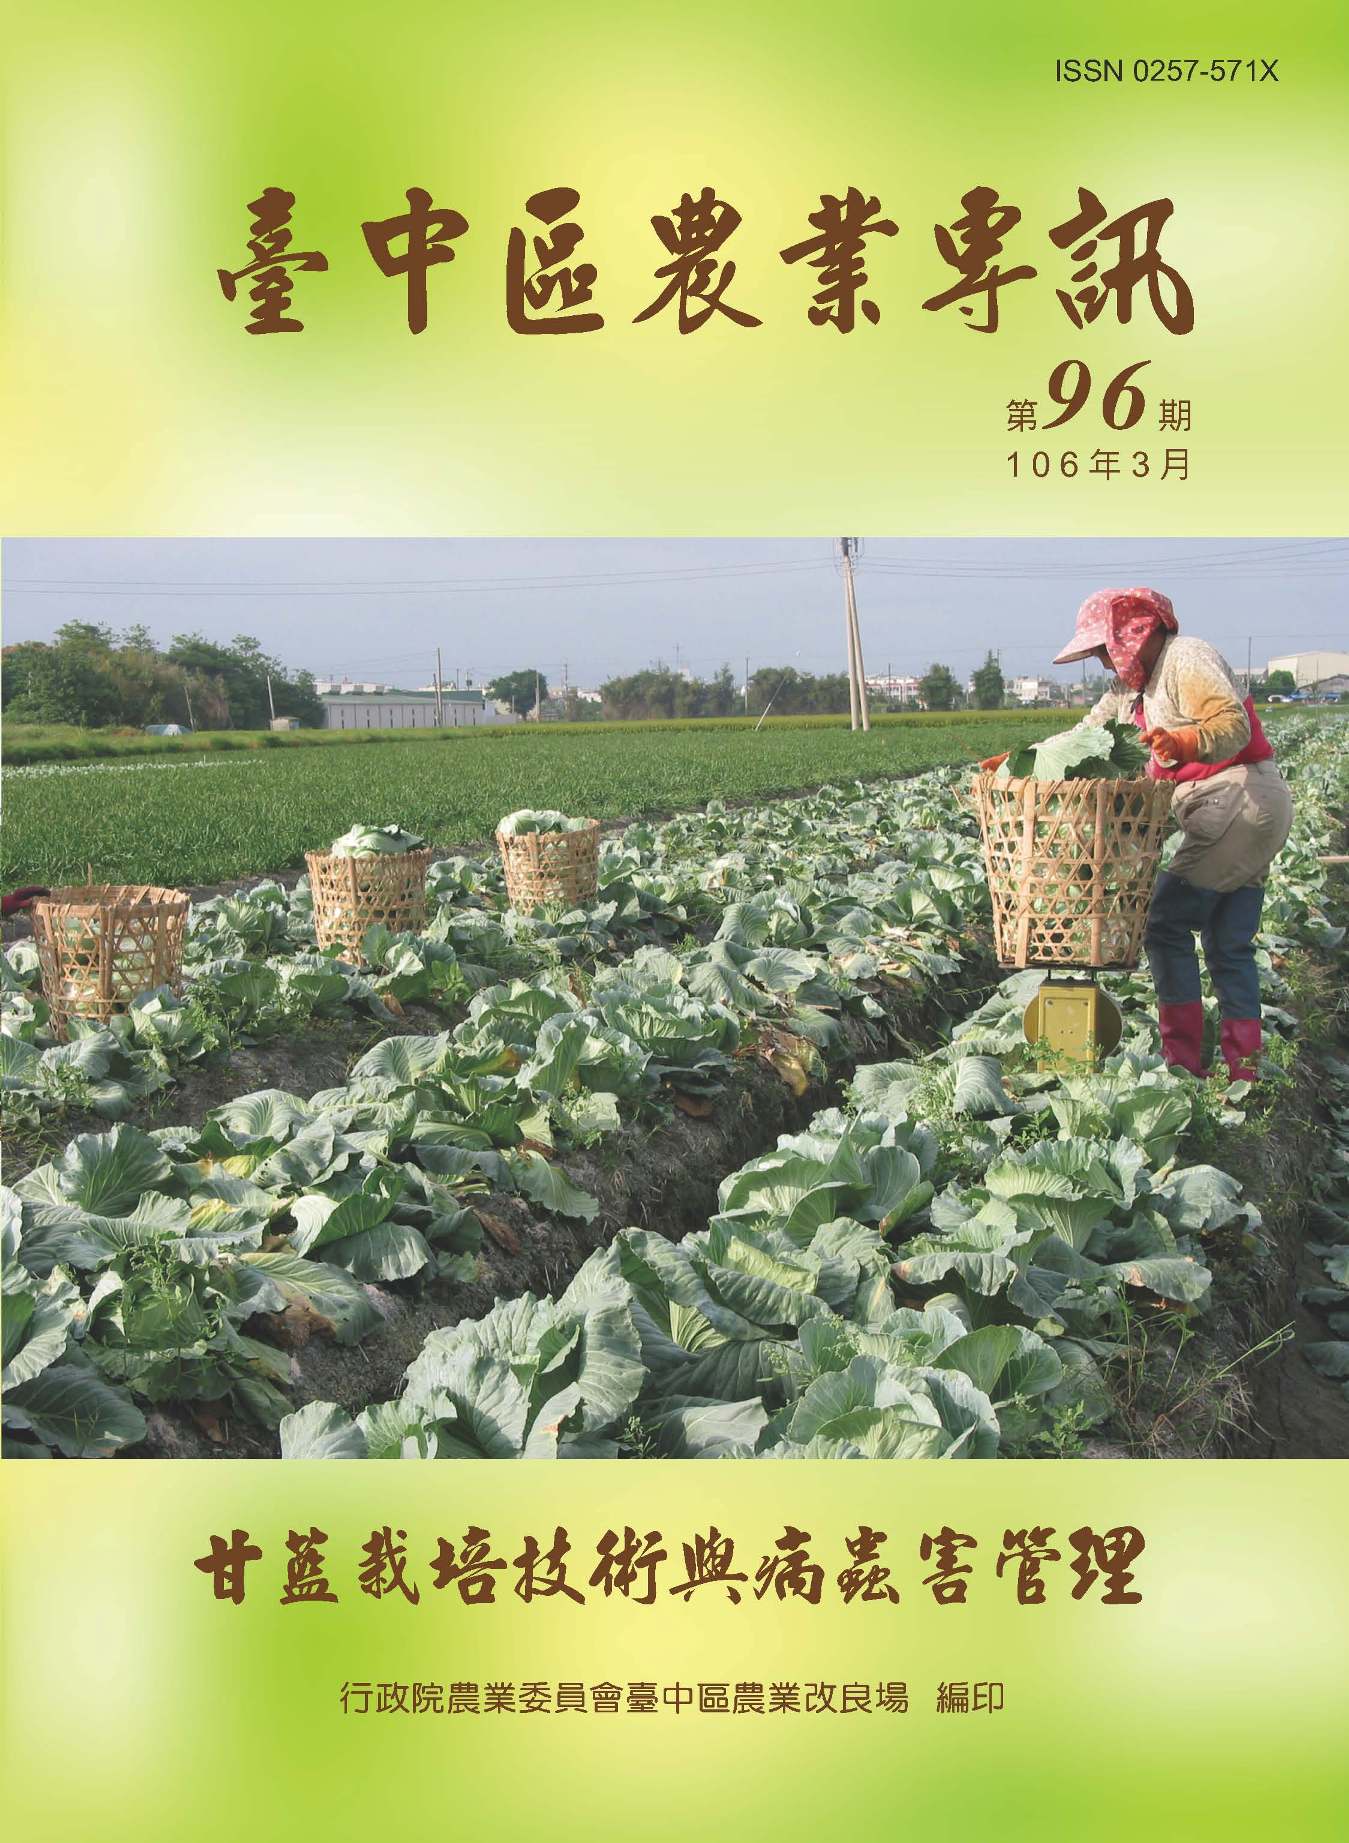 台中區農業專訊第 96 期-甘藍栽培技術與病蟲害管理